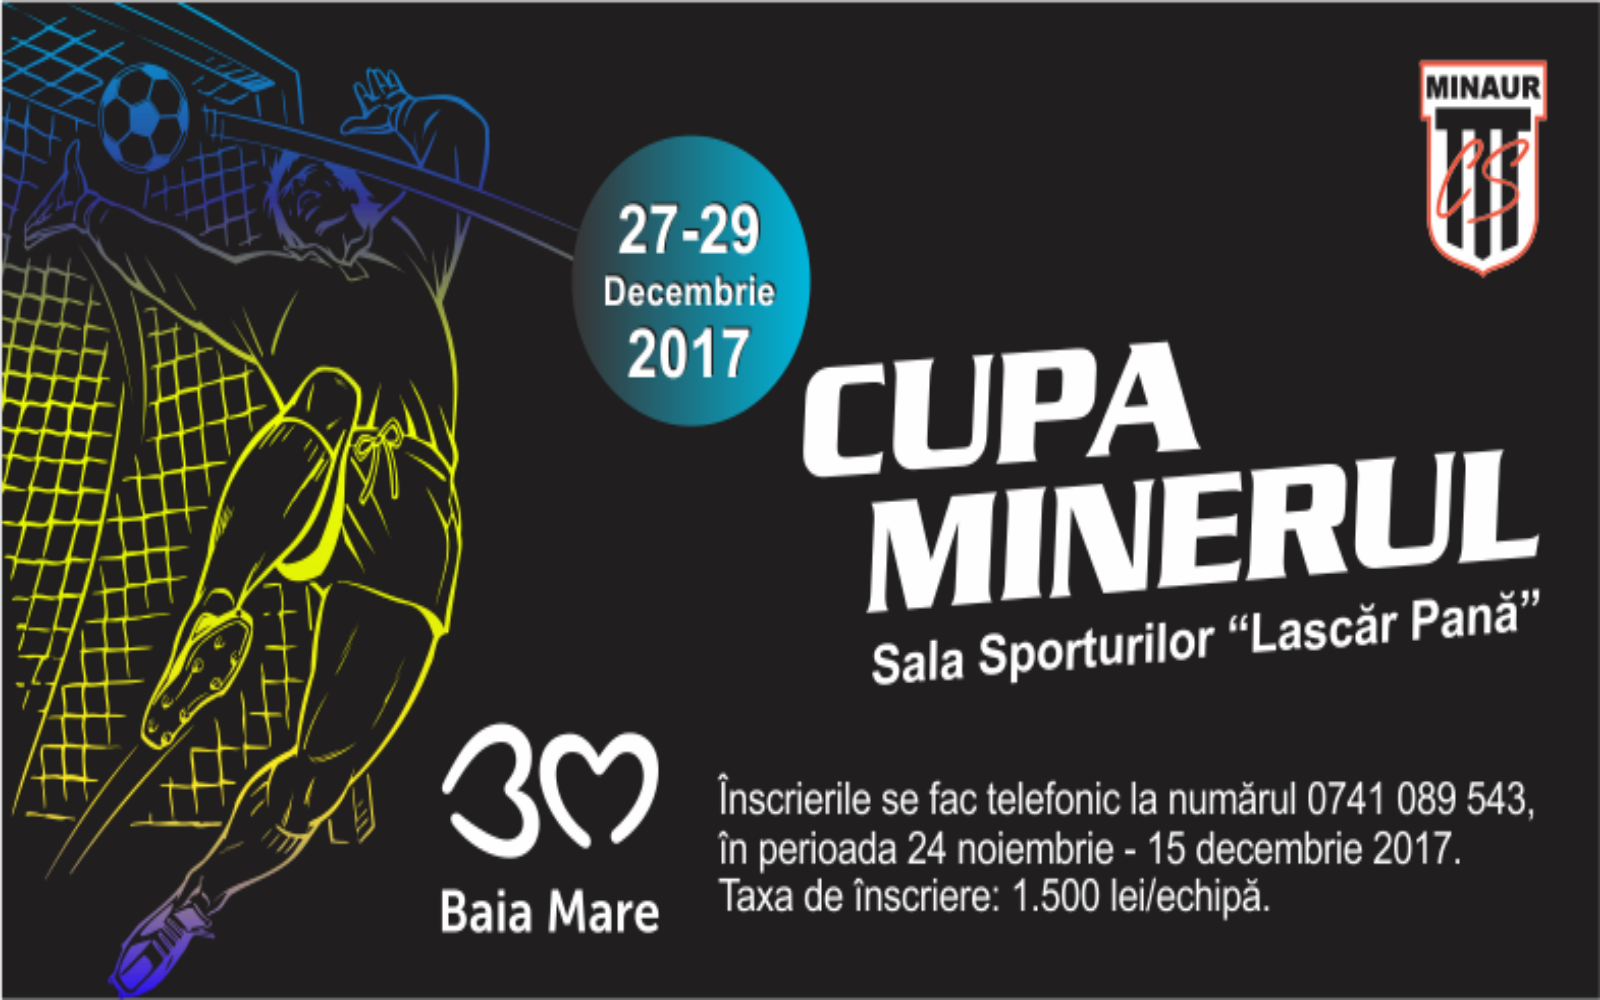 Cover Cupa Minerul 1600x1000